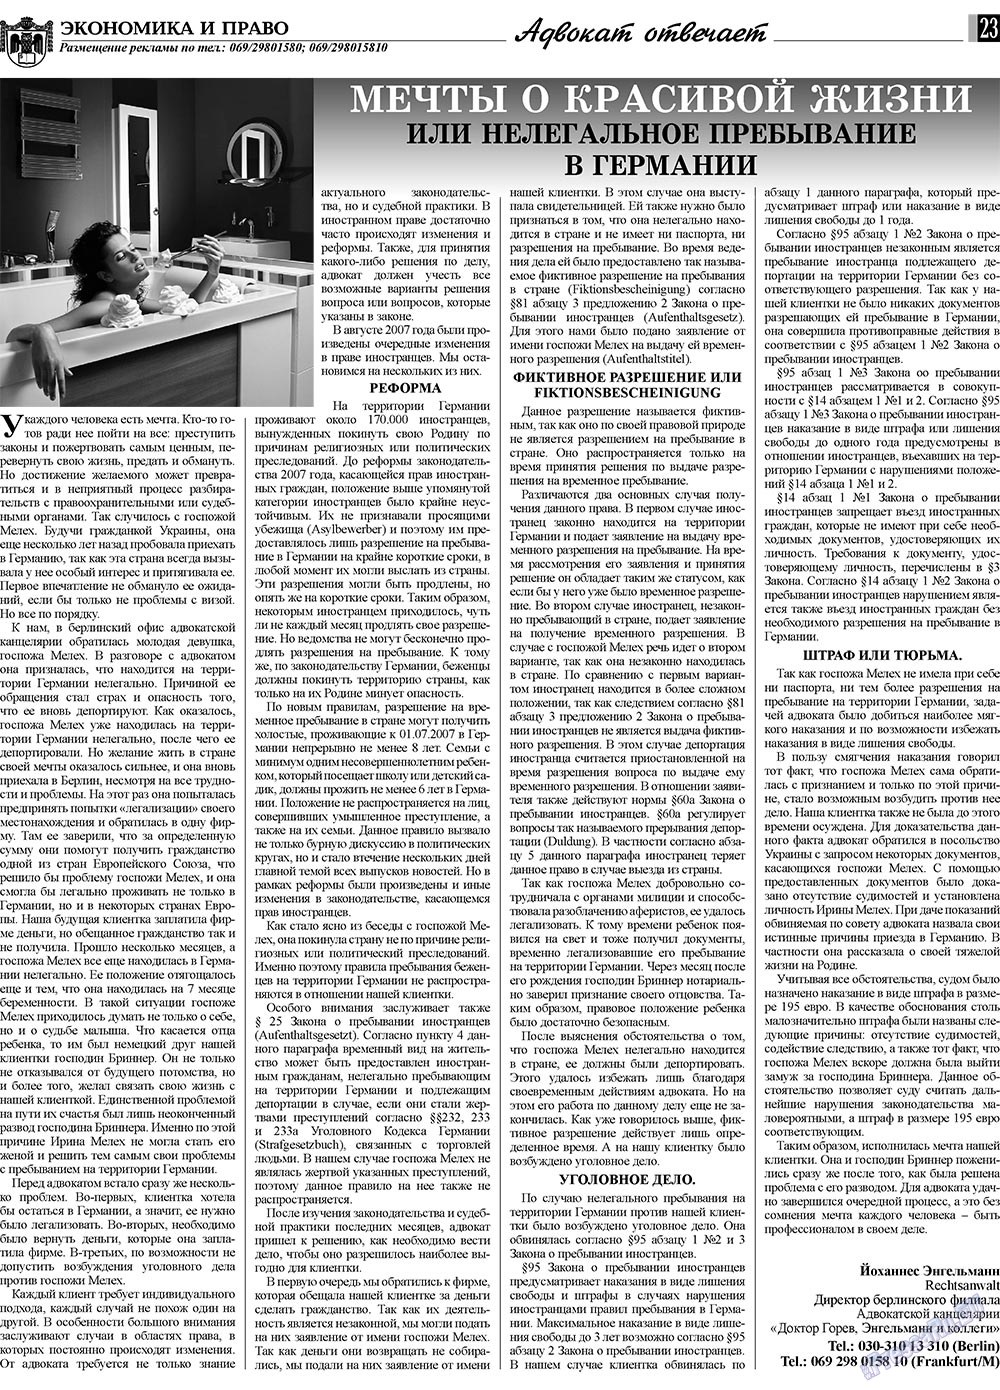 Экономика и право, газета. 2010 №2 стр.23